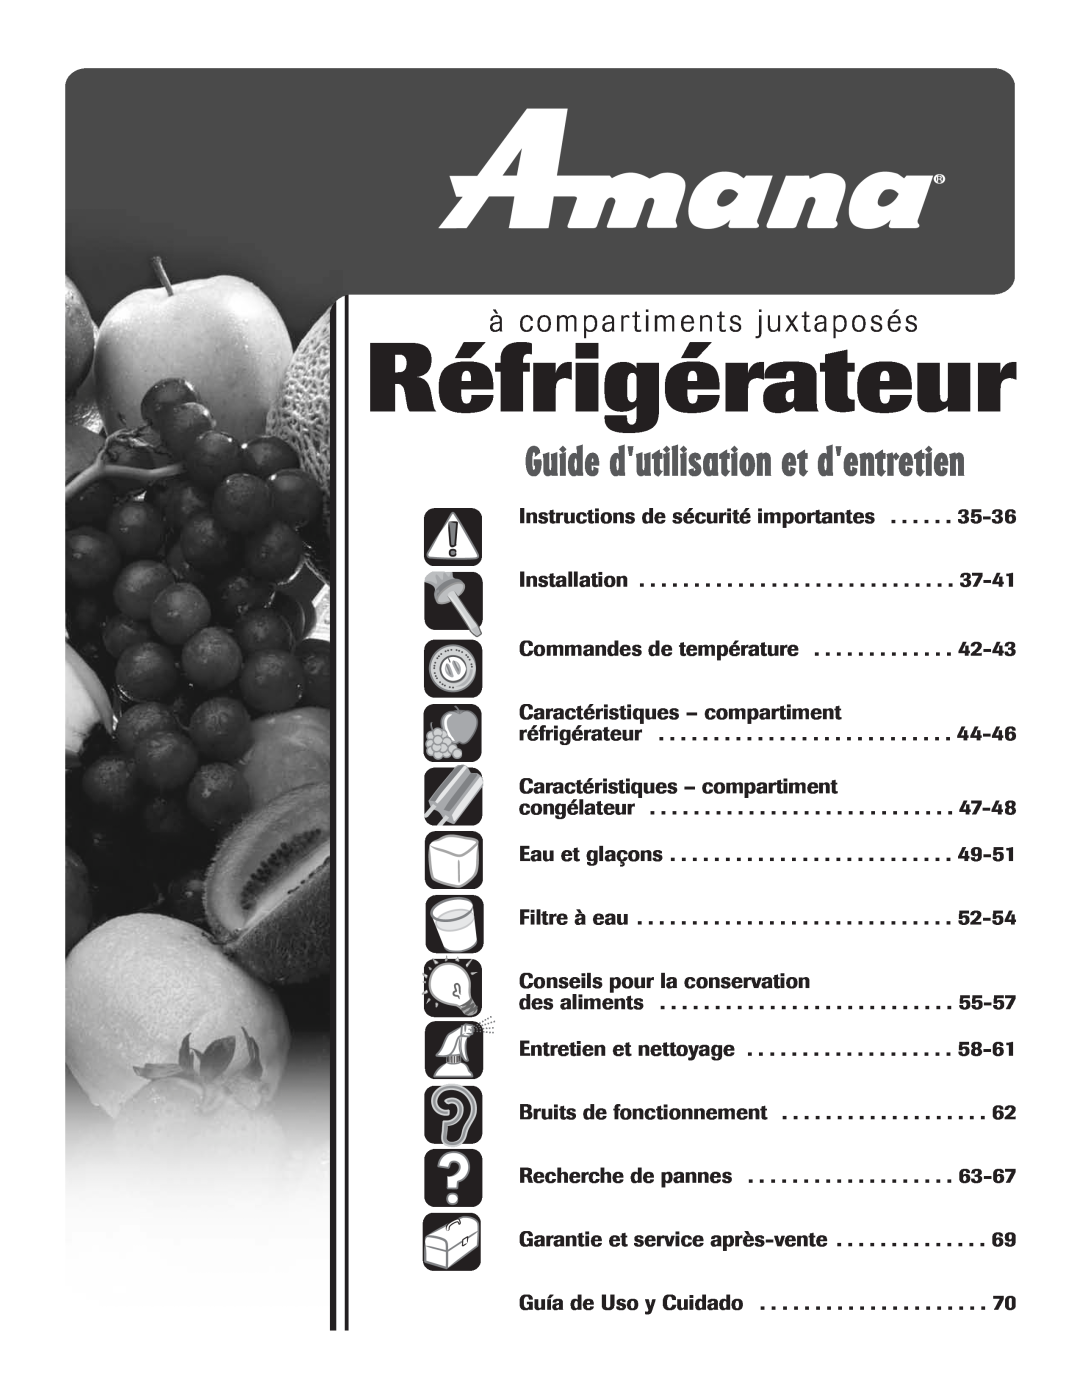 Amana ASD2624HEQ important safety instructions à compartiments juxtaposés, Réfrigérateur, Guide dutilisation et dentretien 